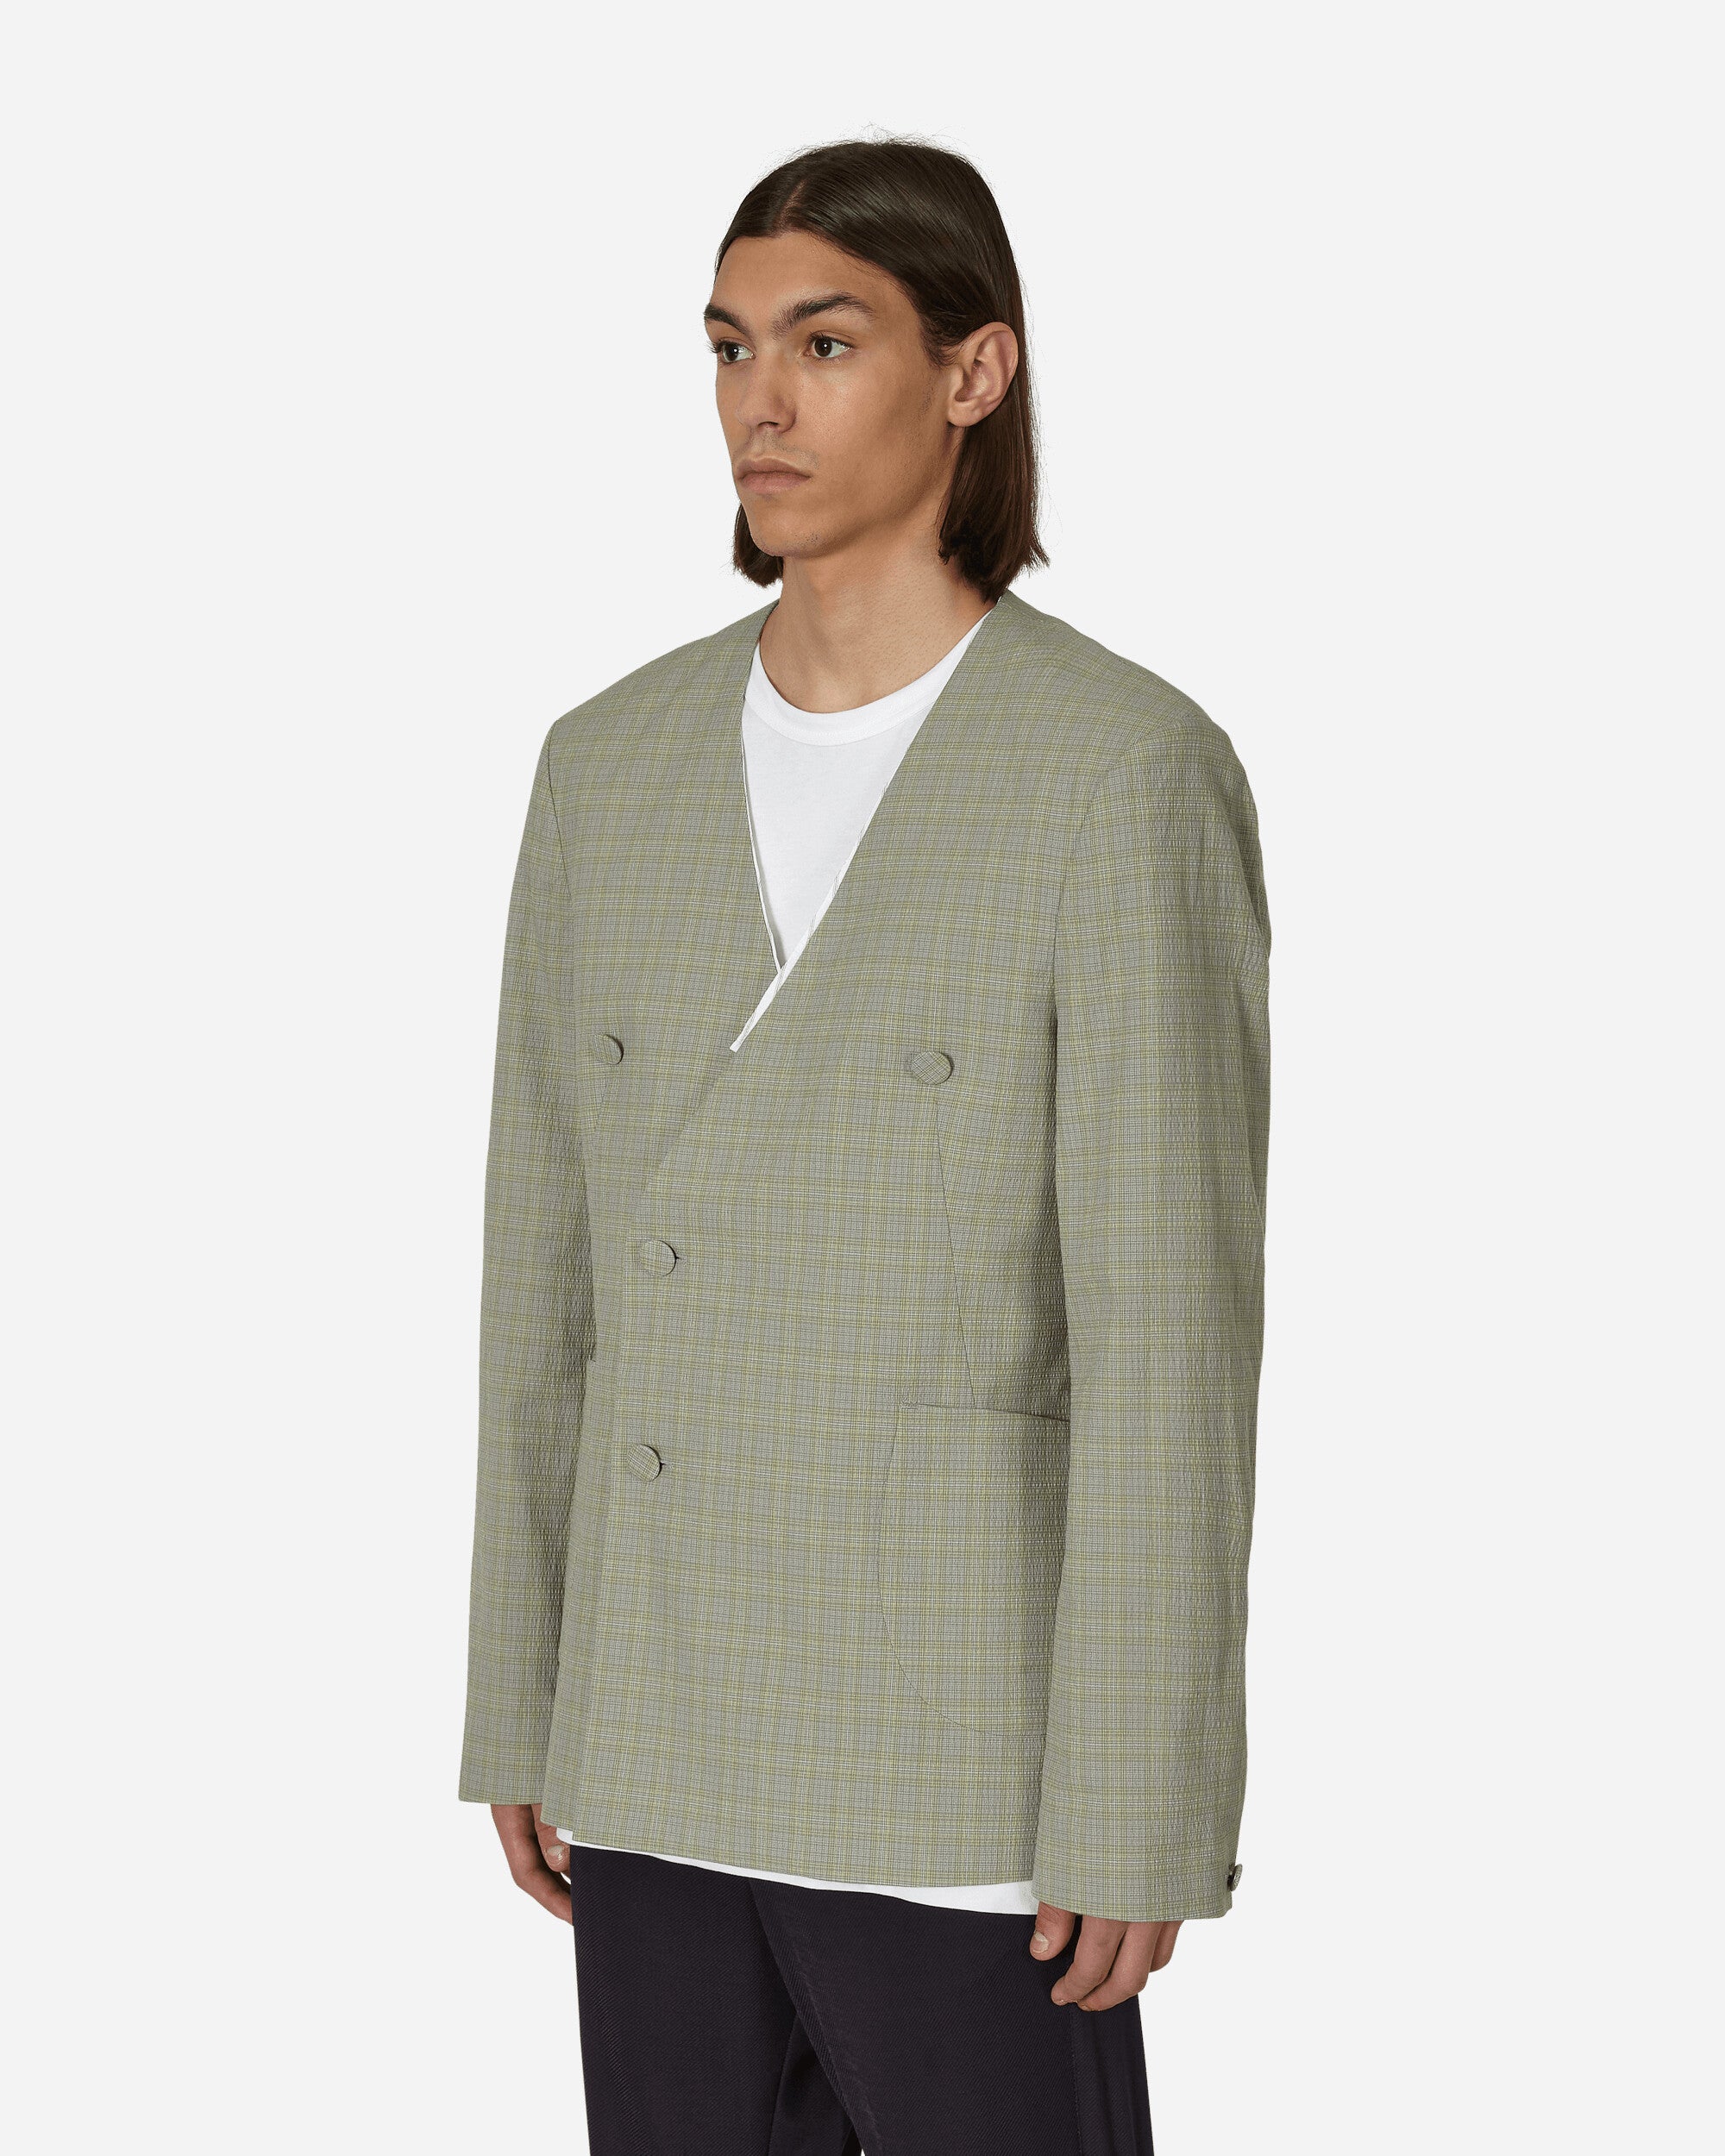 Kiko Kostadinov Oma Reversible Blazer Stone Yellow Check  Coats and Jackets Blazers KKSS23J03-36  001